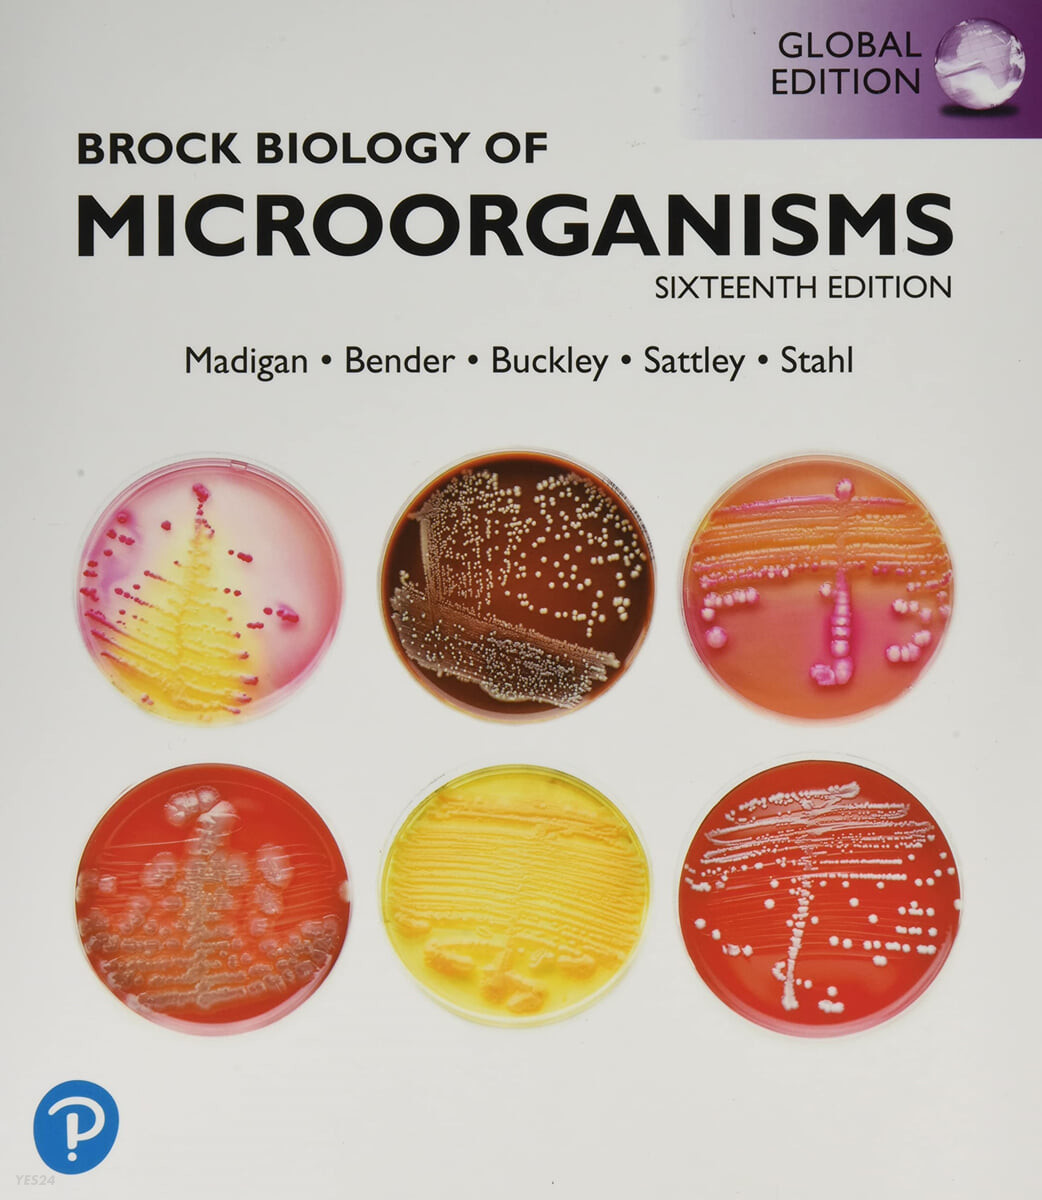 Brock Biology of Microorganisms (Global Edition)